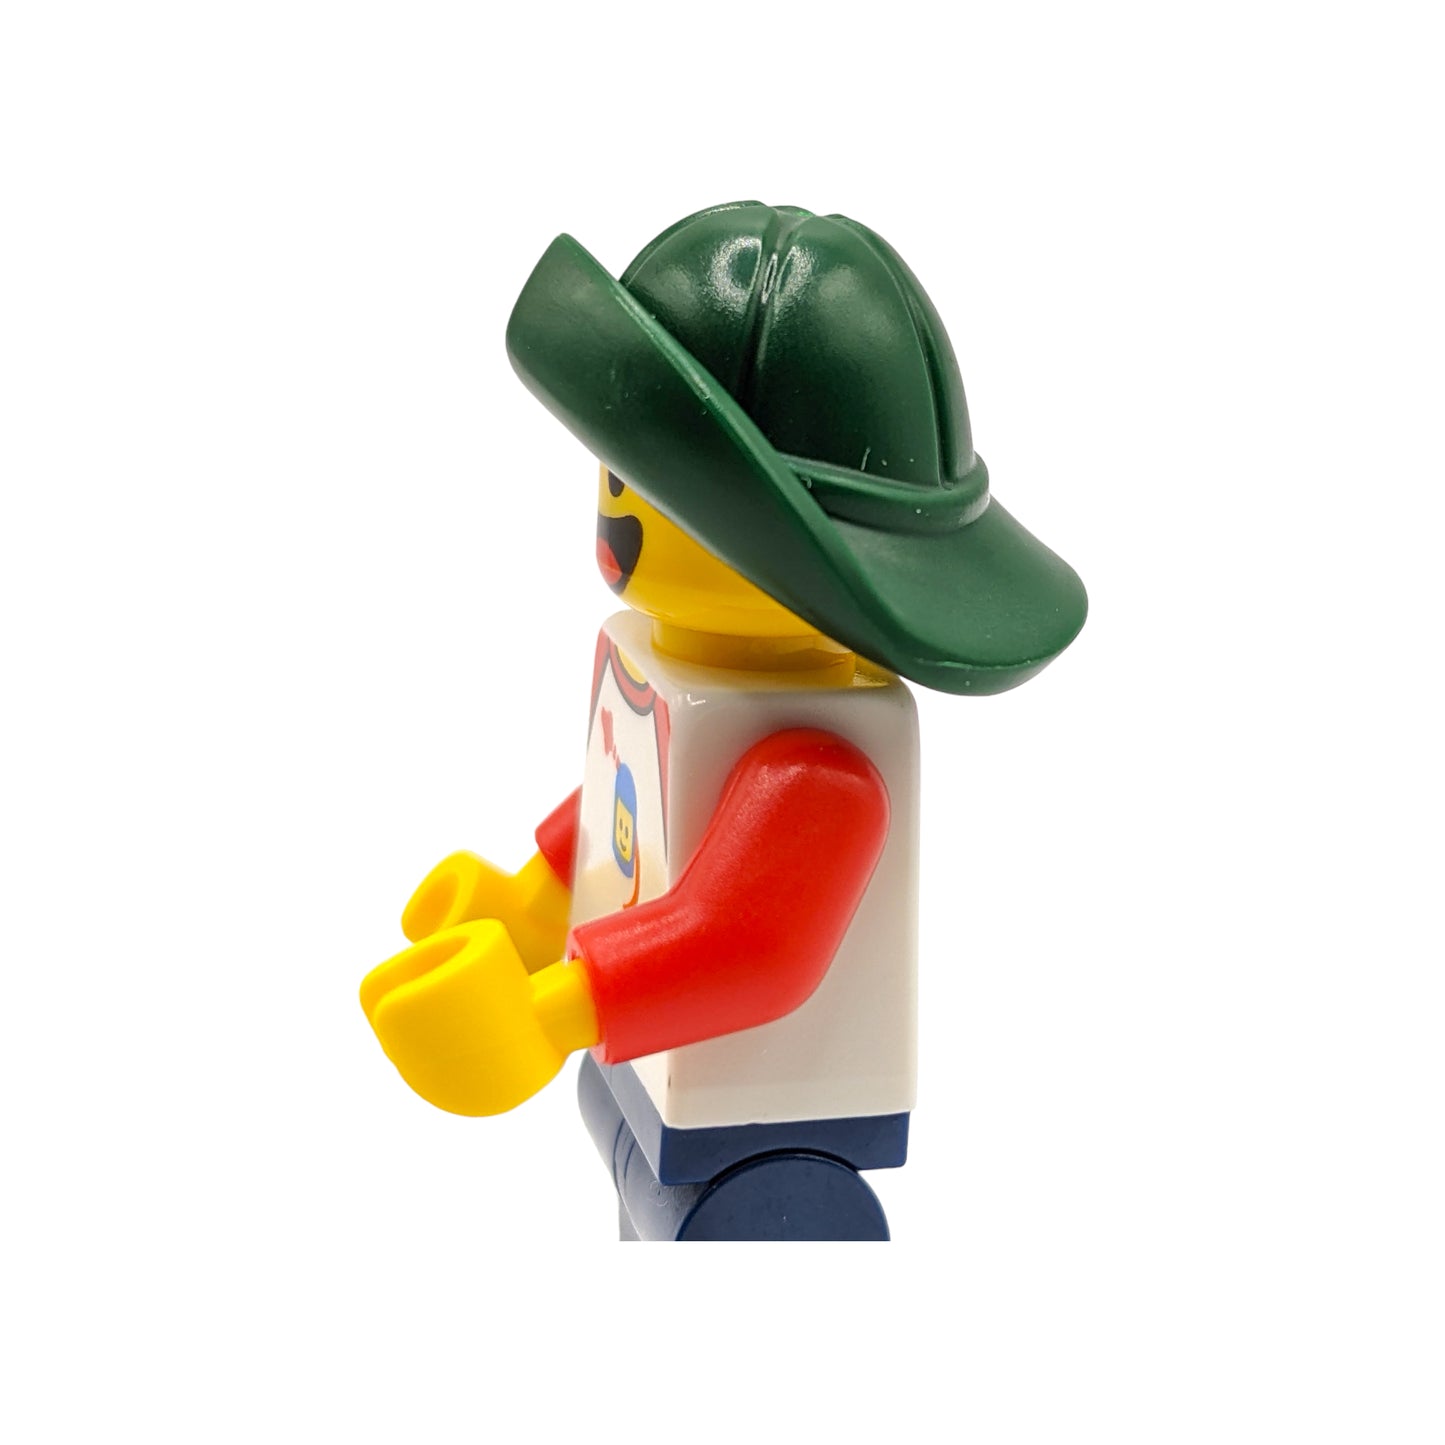 LEGO Hut - Fischer Regenmütze in Dark Green